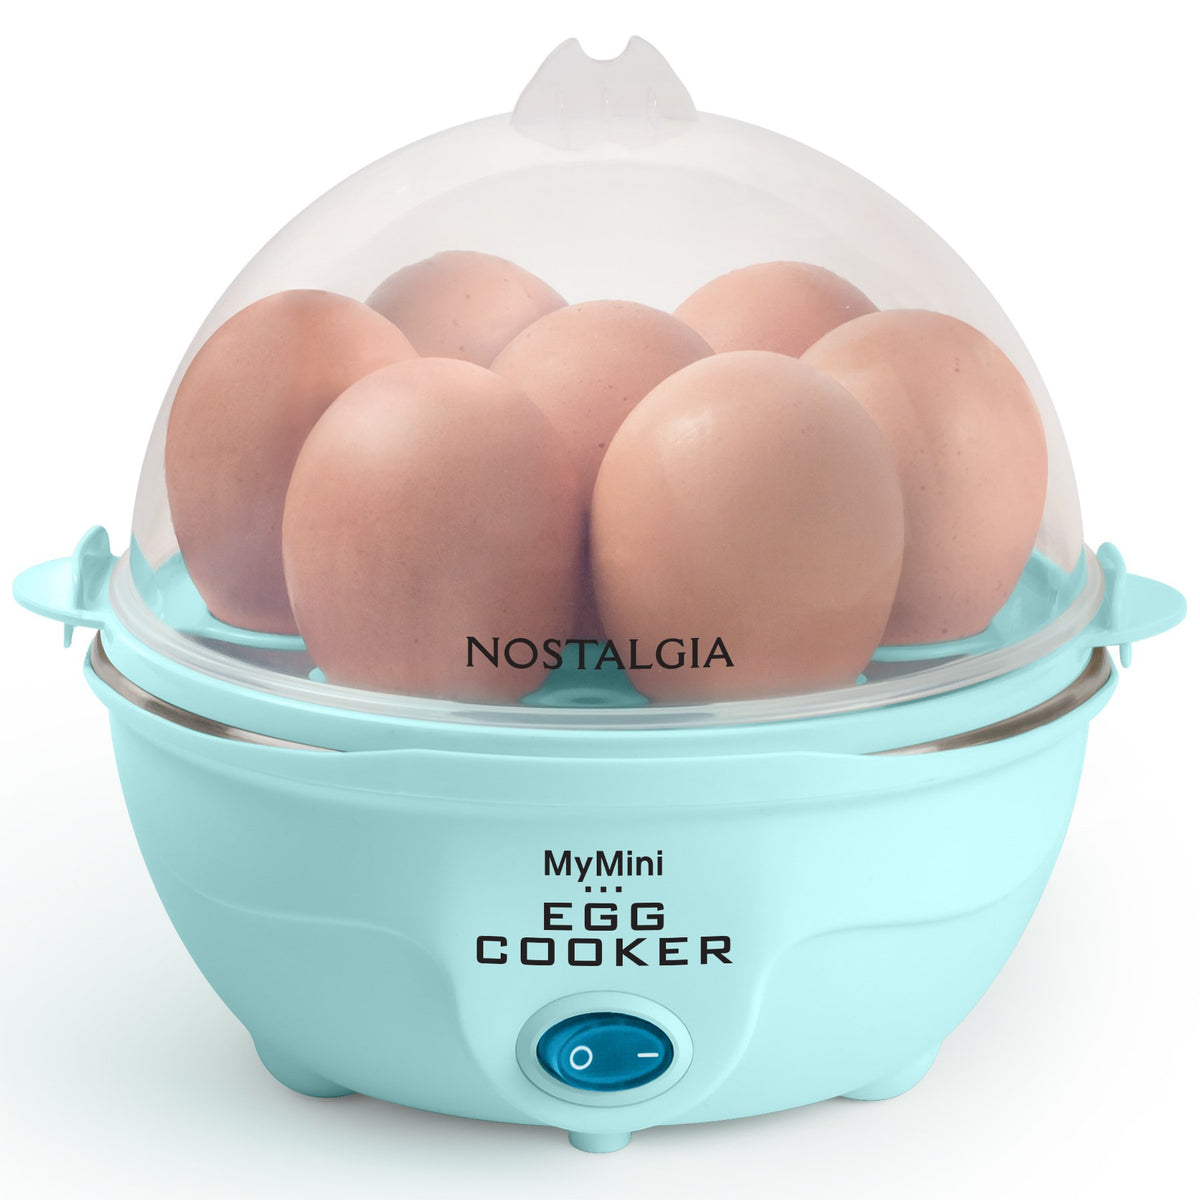 Dash 7-Egg Everyday Egg Cooker Aqua